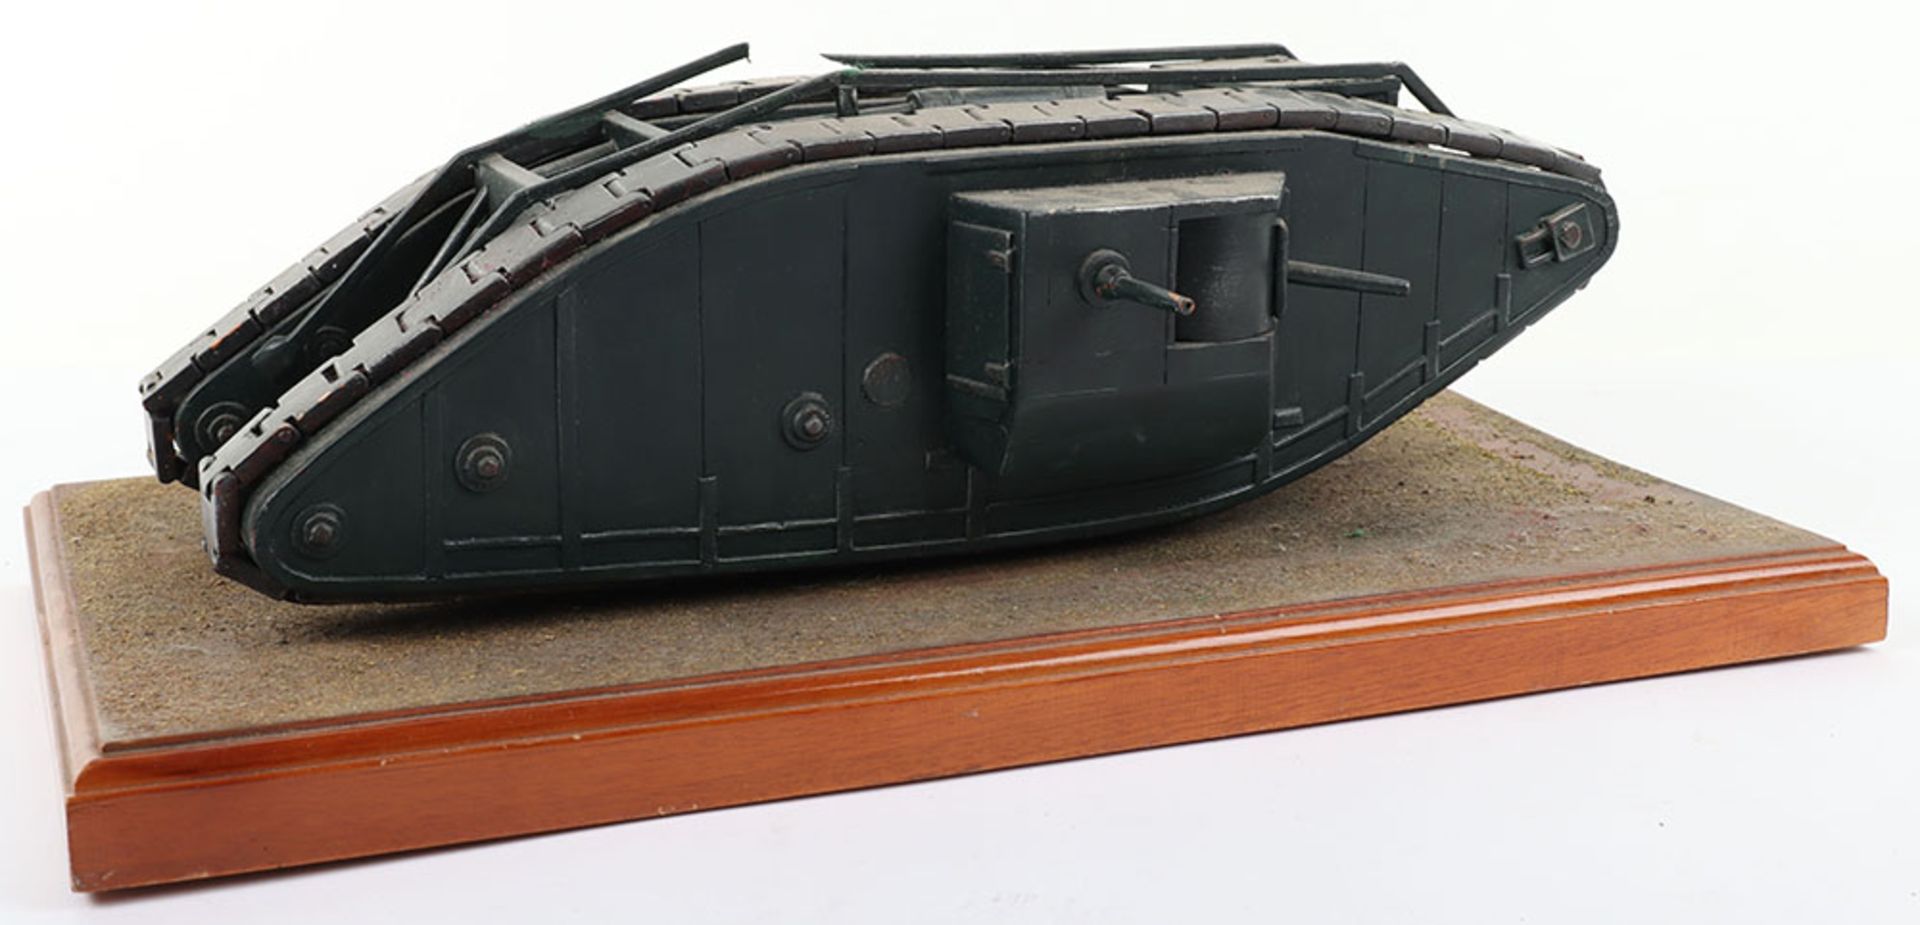 A WWI wooden tank model